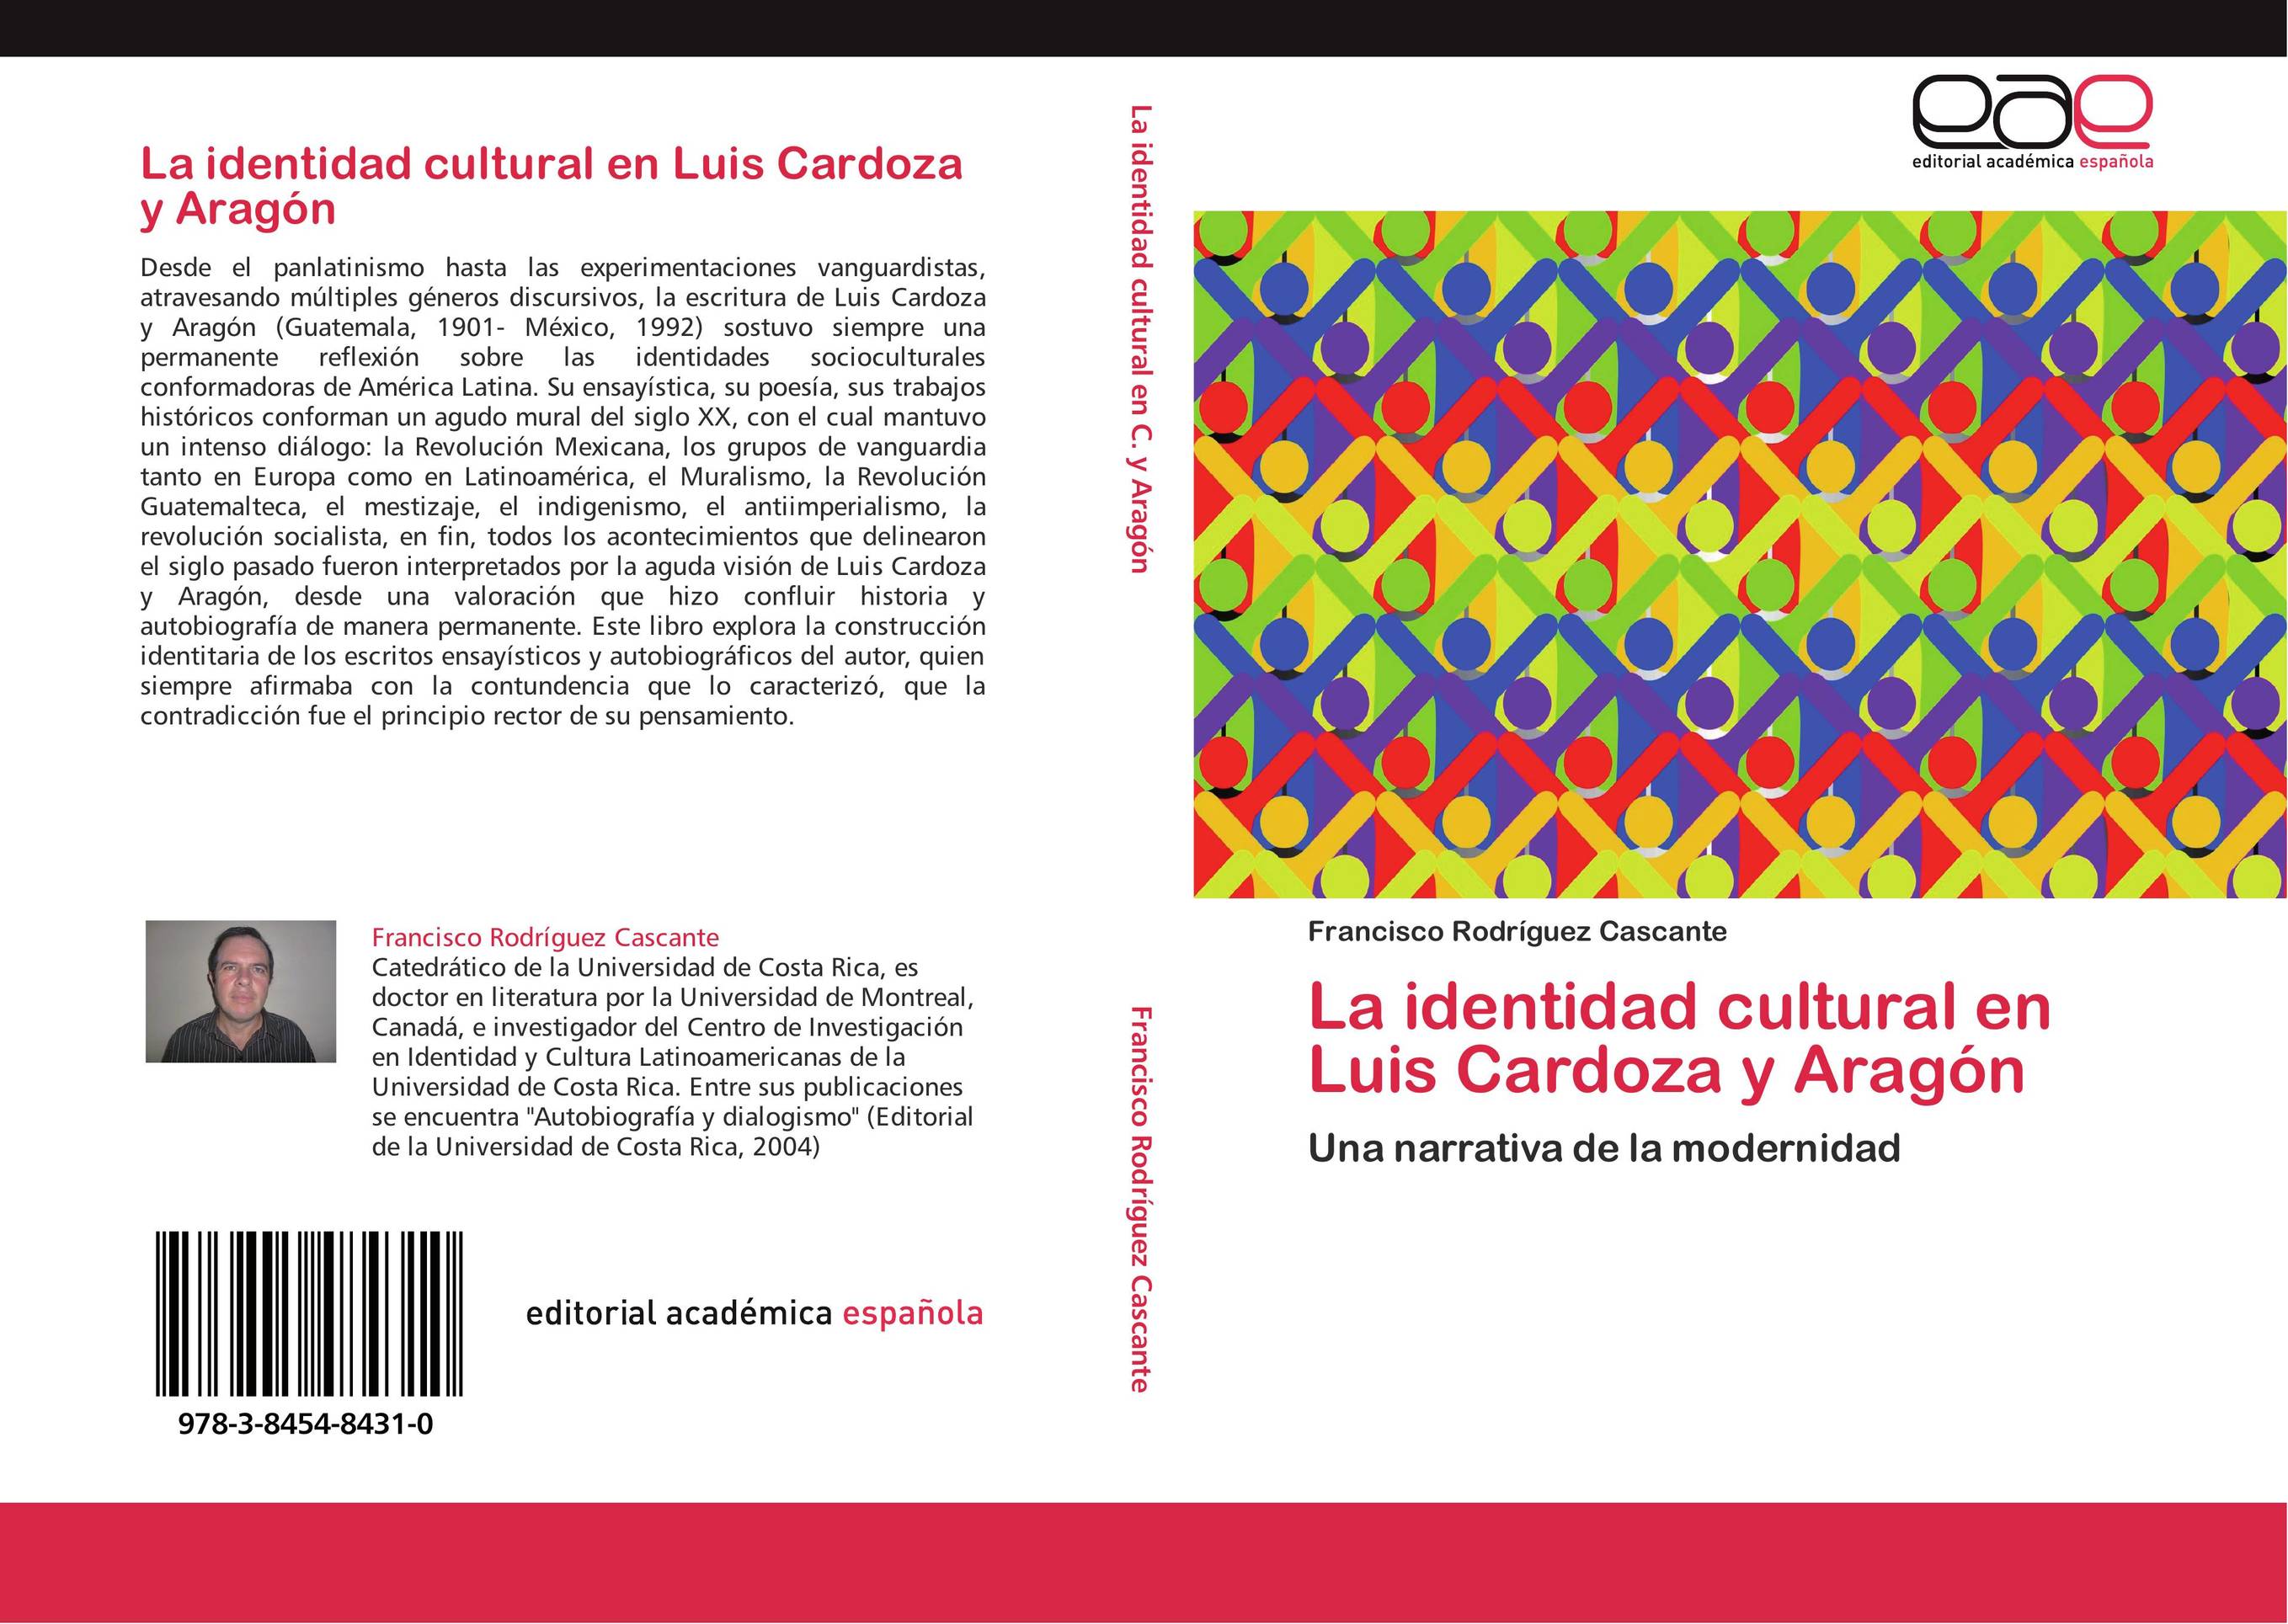 La identidad cultural en Luis Cardoza y Aragón